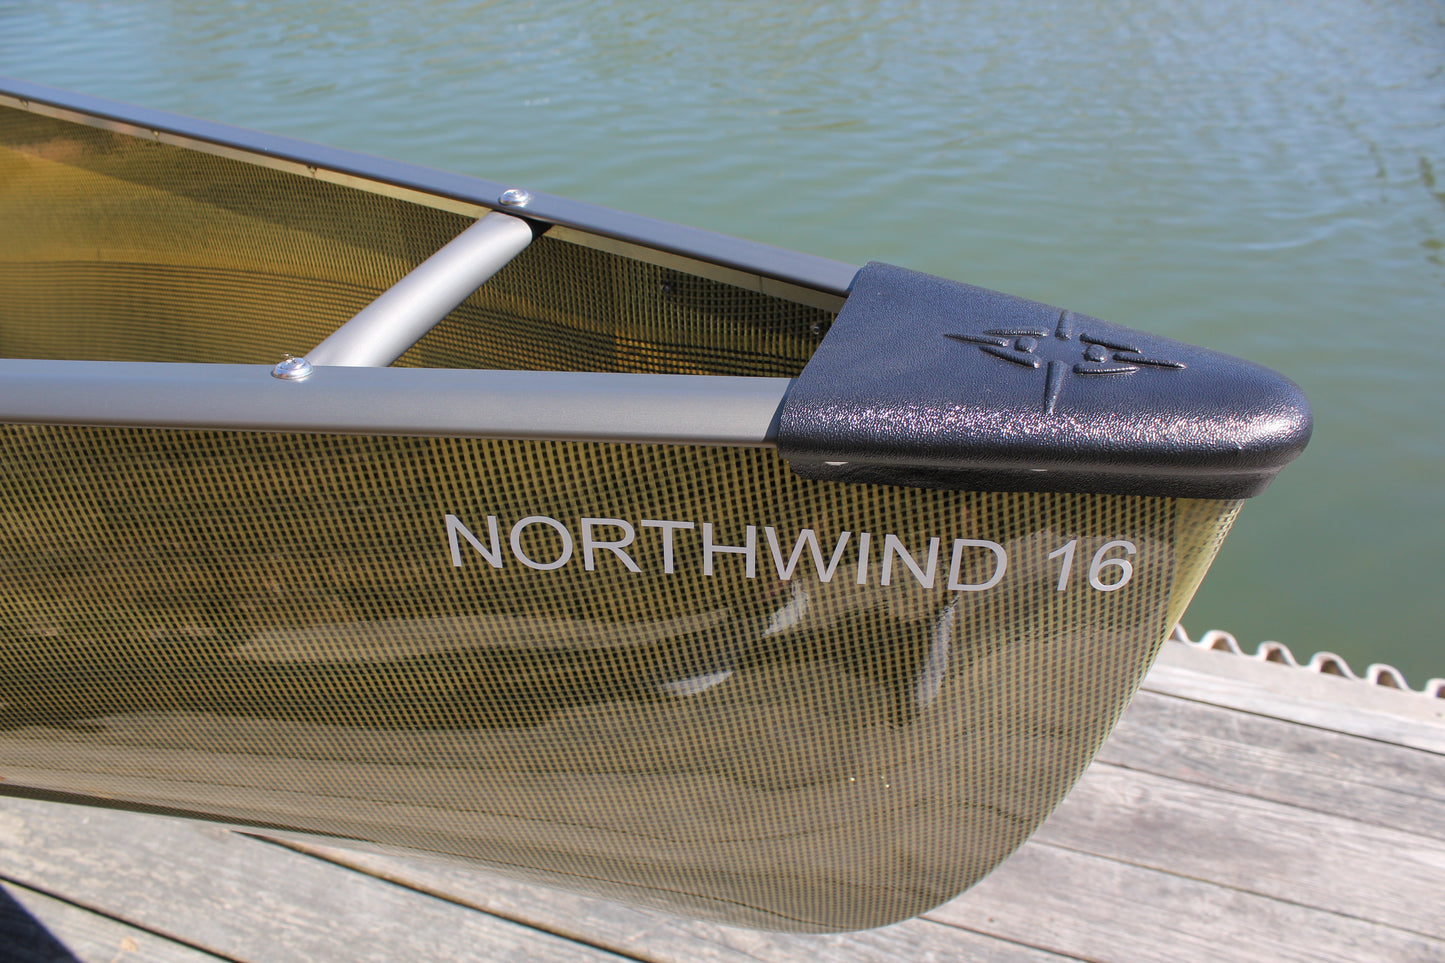 Northstar Northwind 16 Aluminum Trim